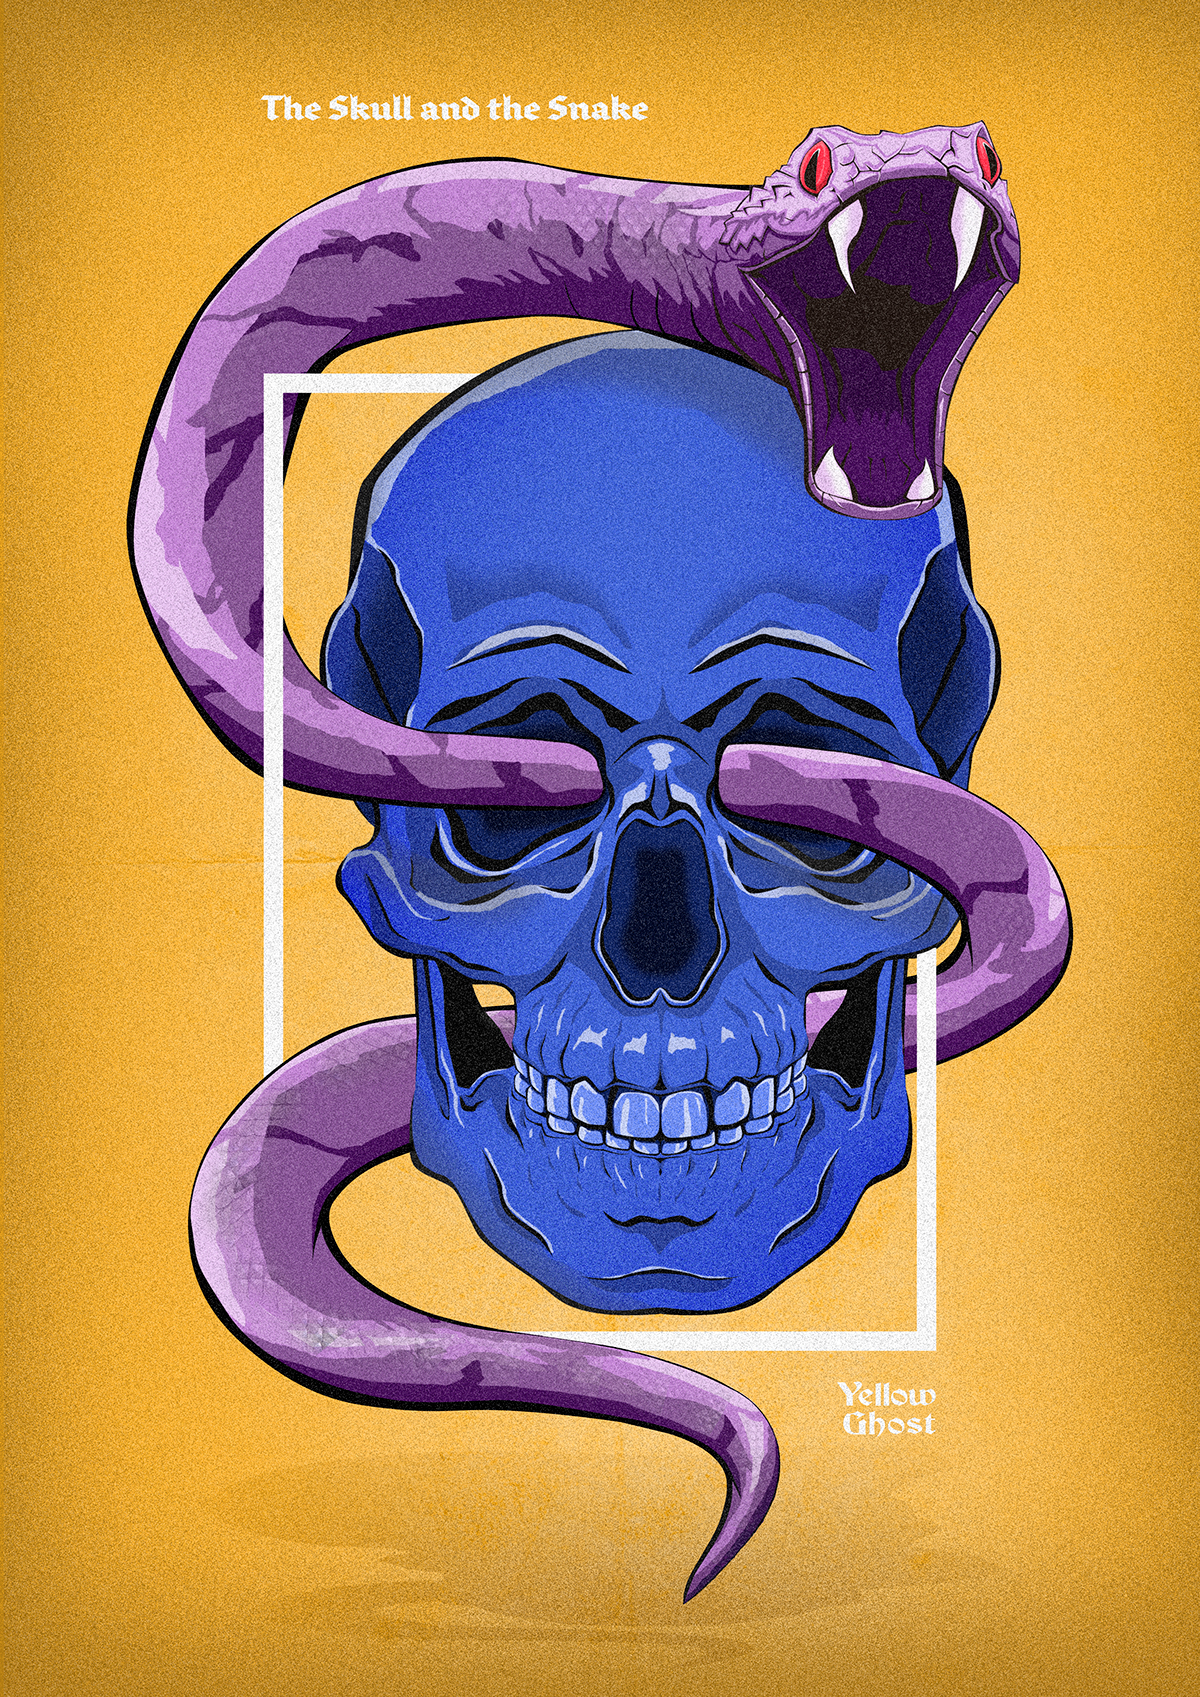 ILLUSTRATION  skull snake tale design poster yellowghost